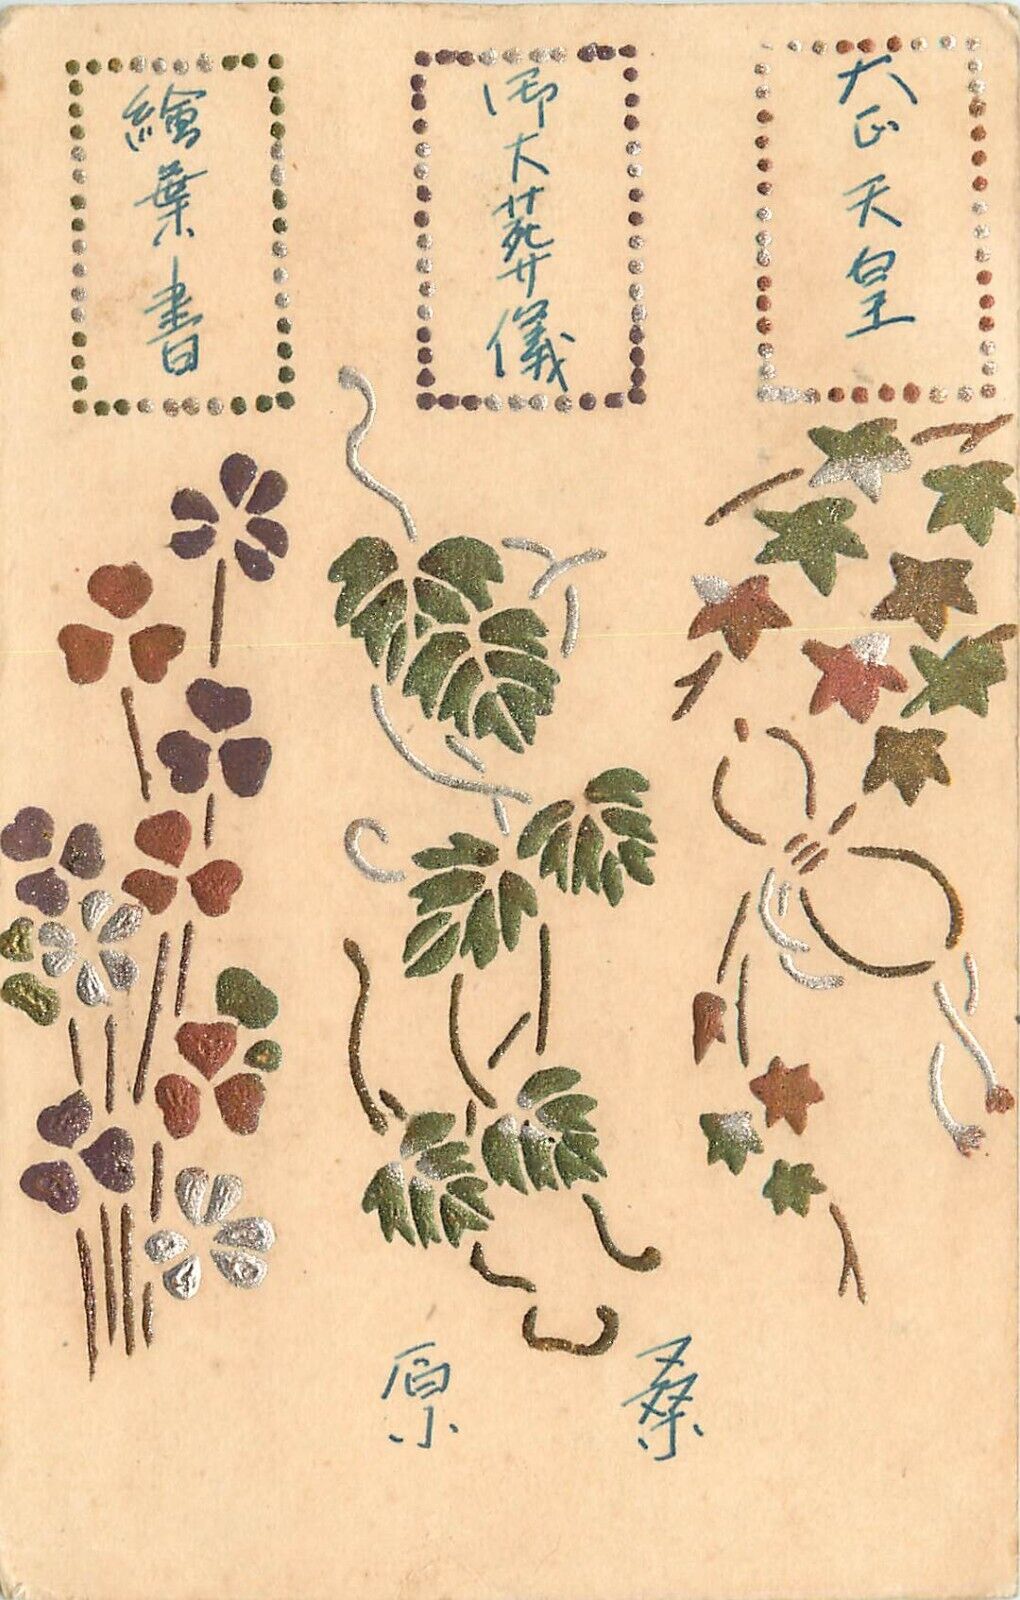 Japanese Arts & Crafts Style Postcard Leaves Botanical Motif Metallic Inks